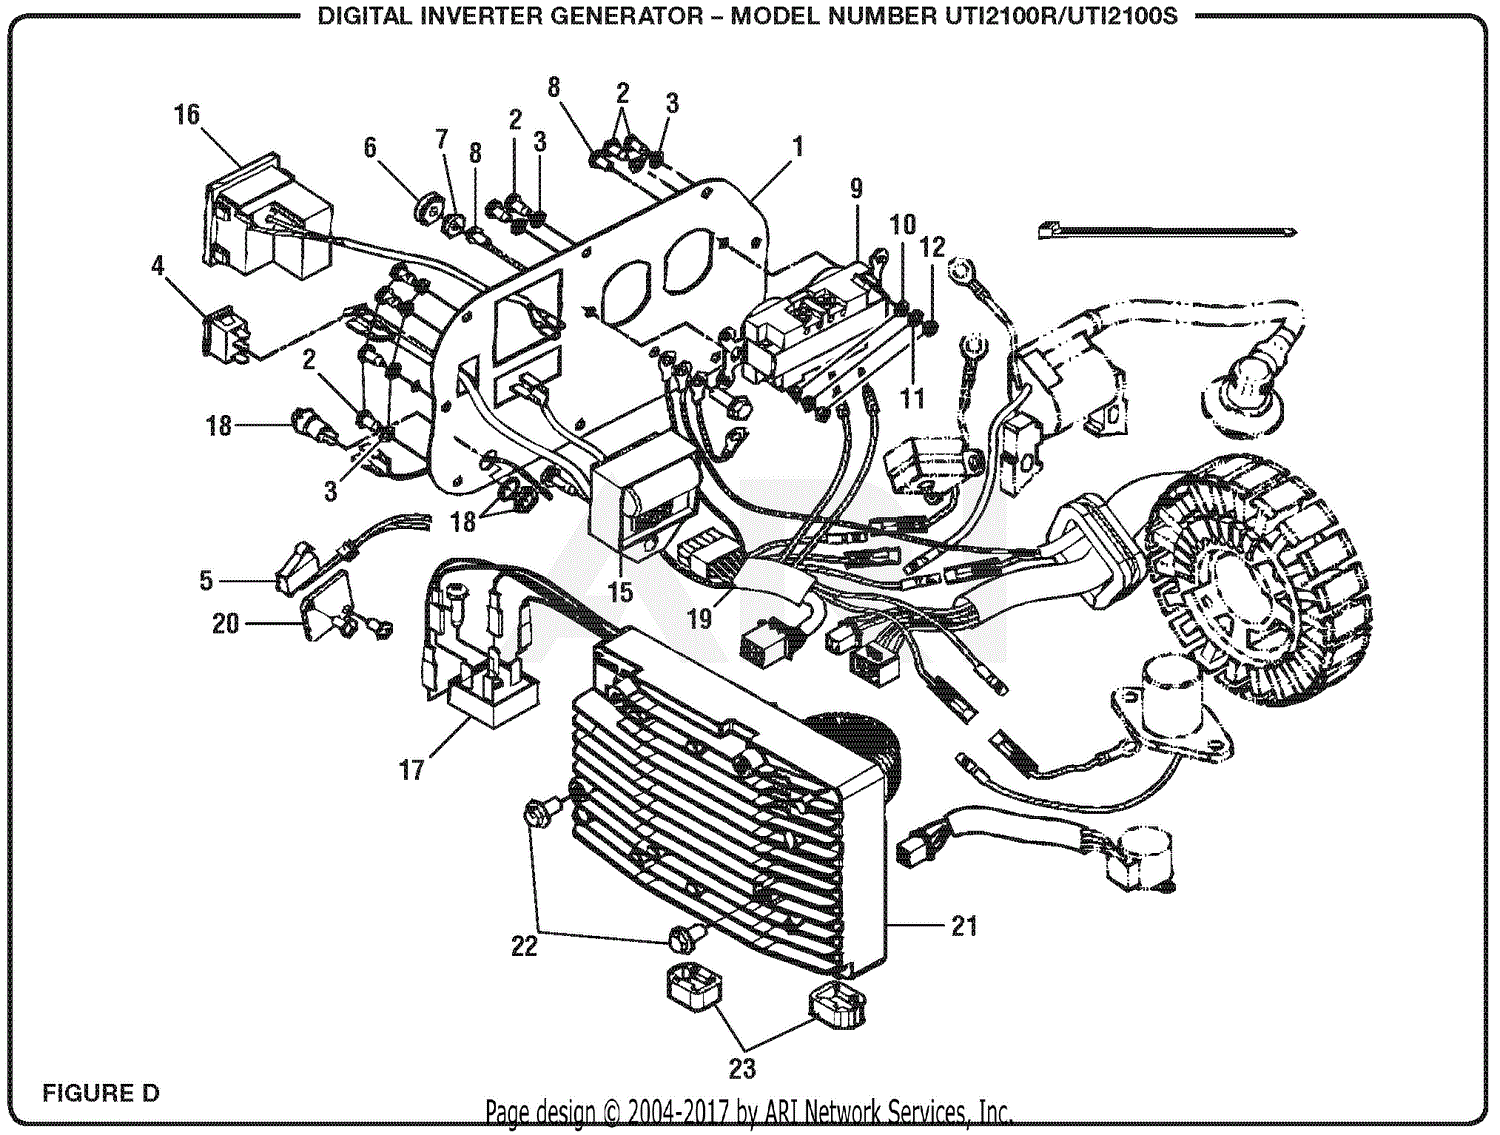 Homelite Uti2100r Digital Inverter Generator Parts Diagram